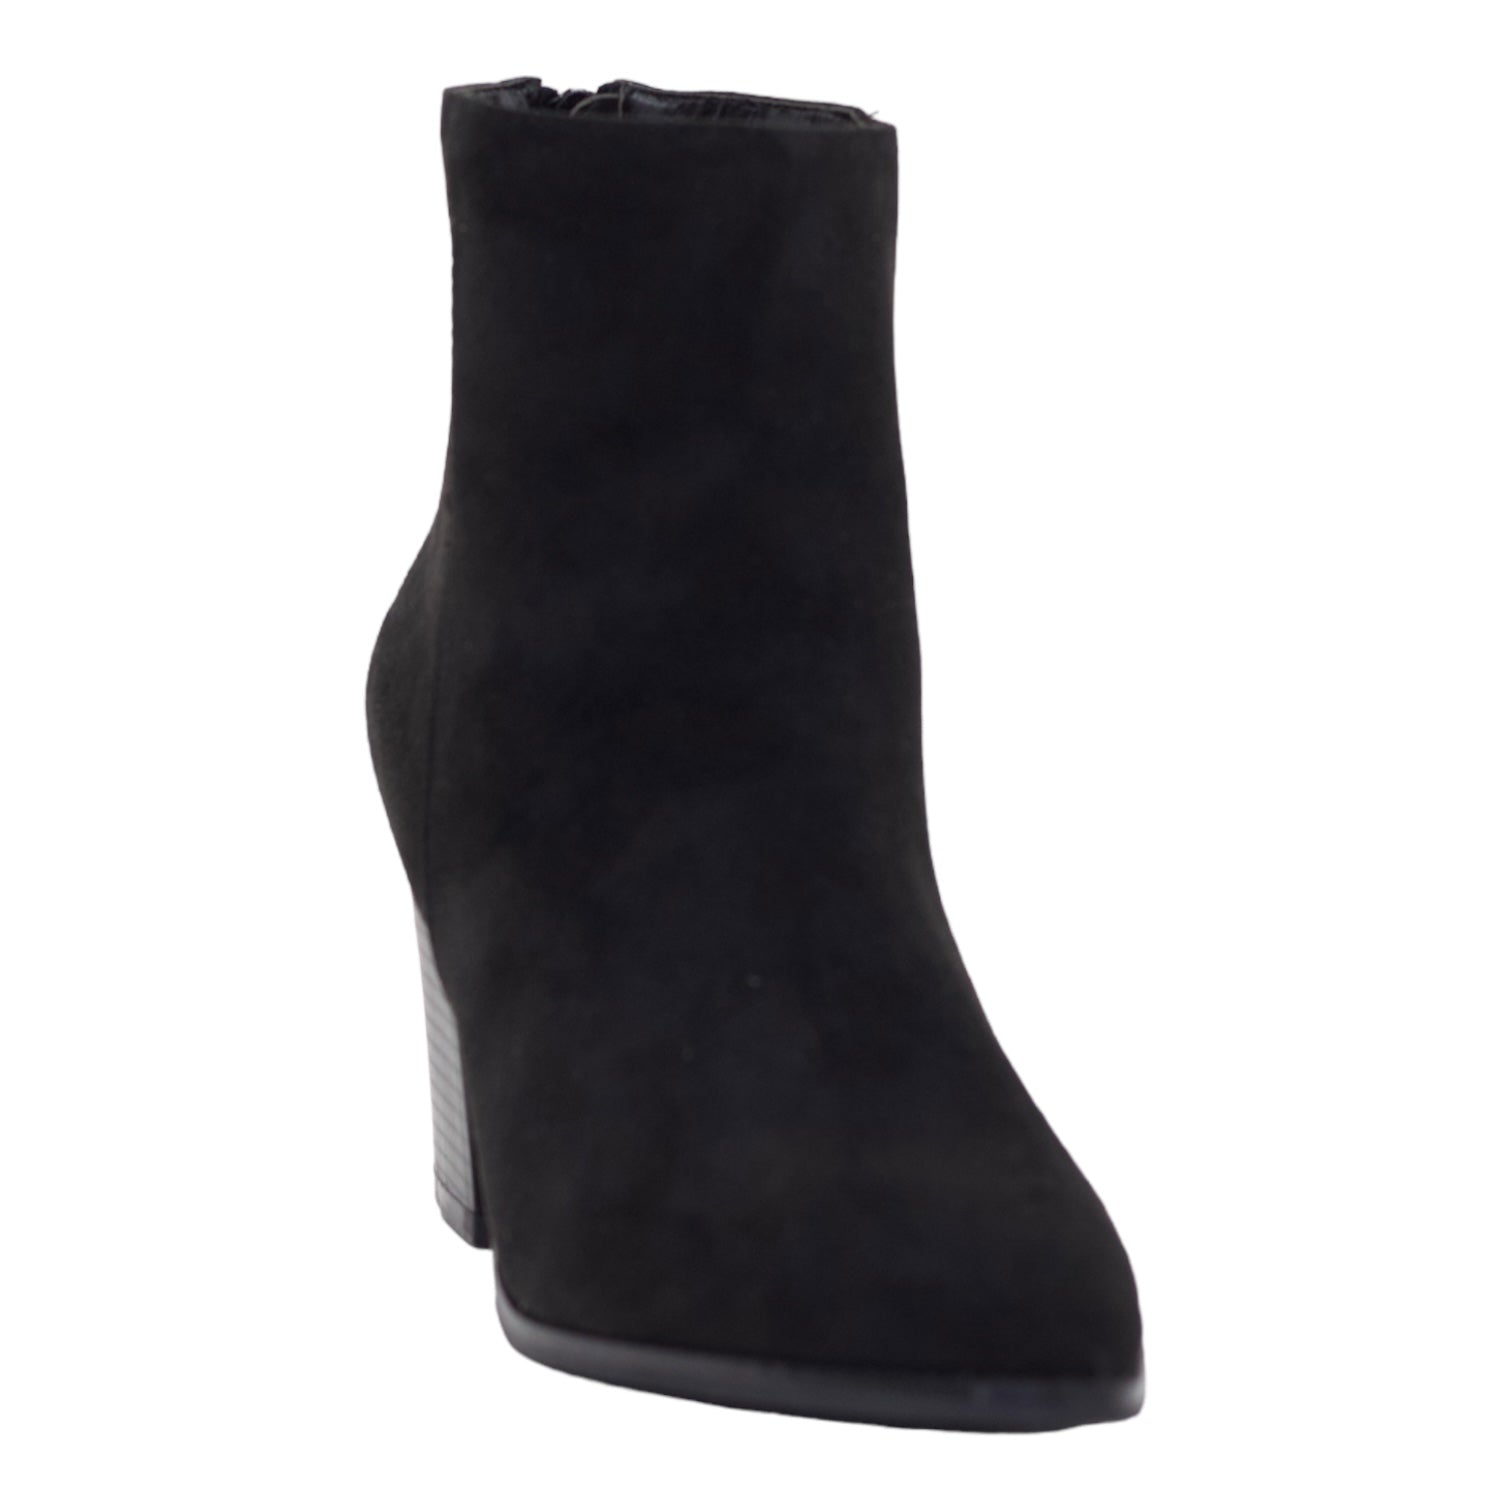 Black 8cm block heel LA08-17 suede ankle boot shelin